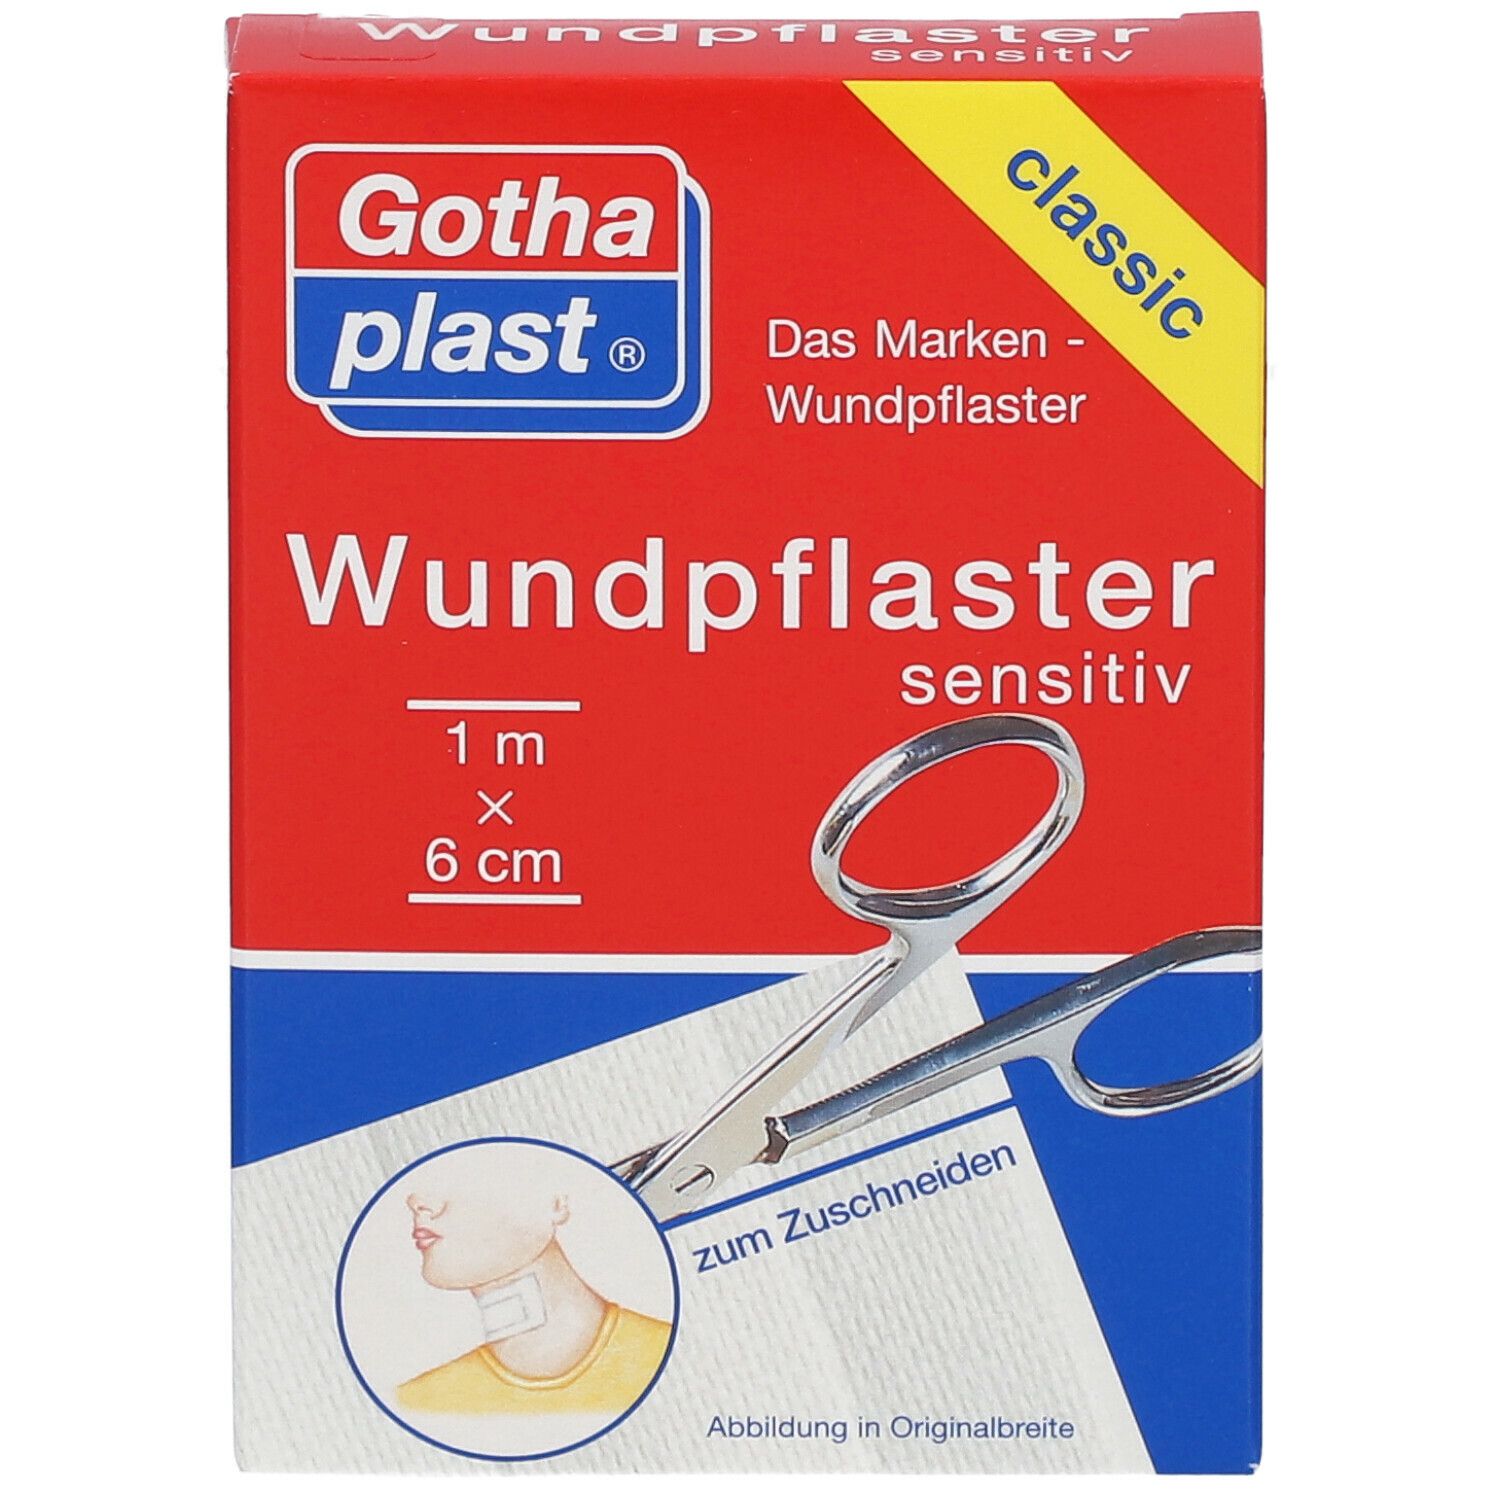 Gothaplast® Wundpflaster sensitiv 1 cm x 6 cm